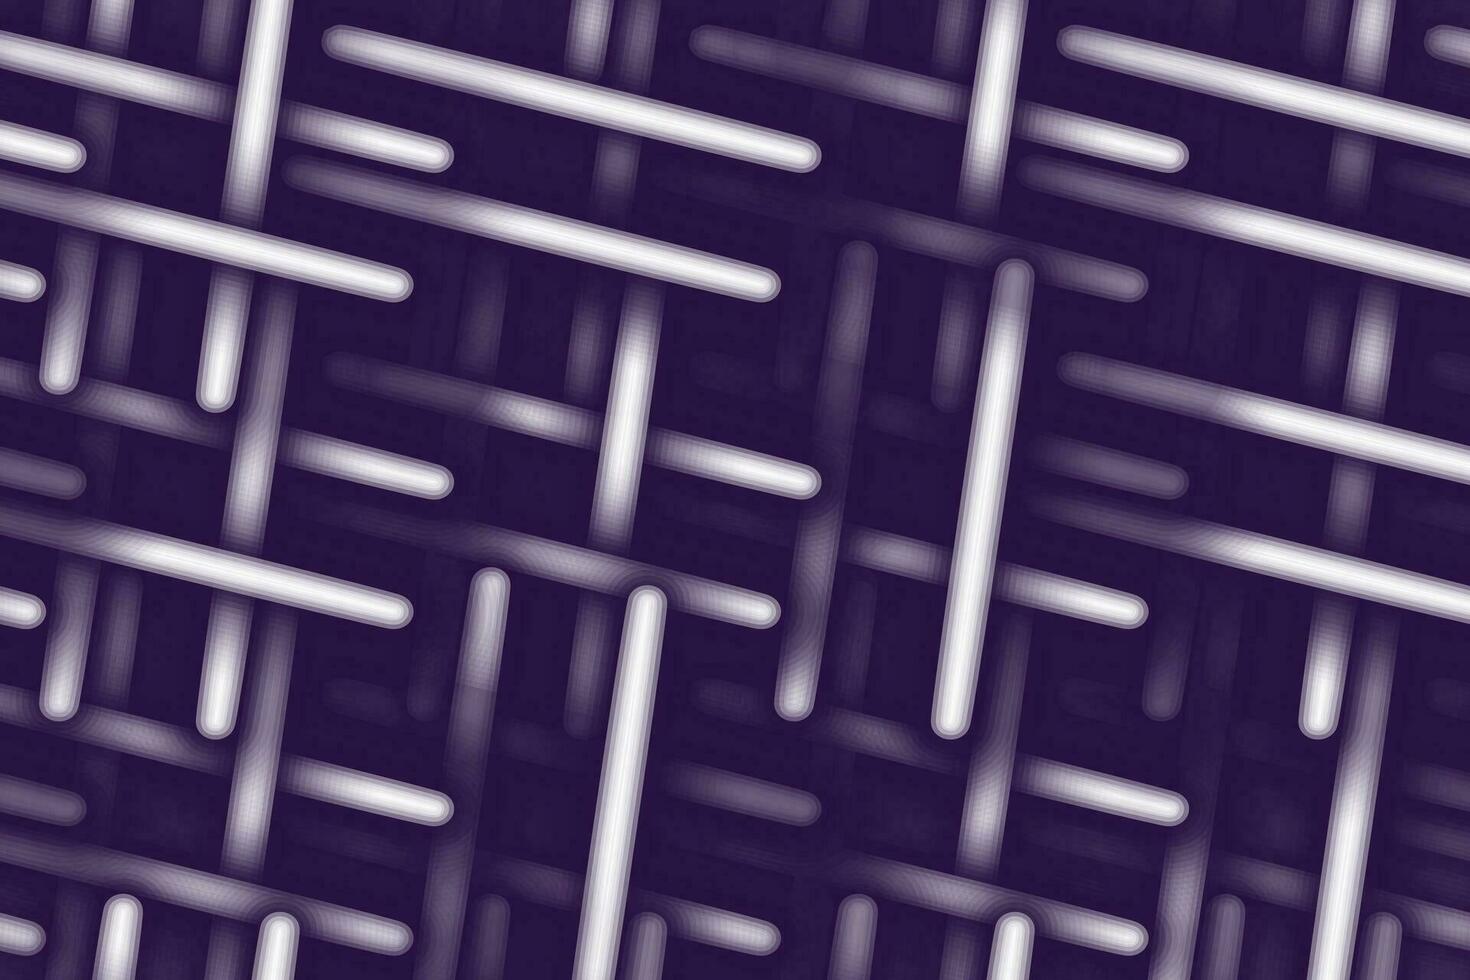 abstrakt bakgrund textur av sammanflätade neon element i trendig mörk violett nyans. stickat 3d effekt vektor